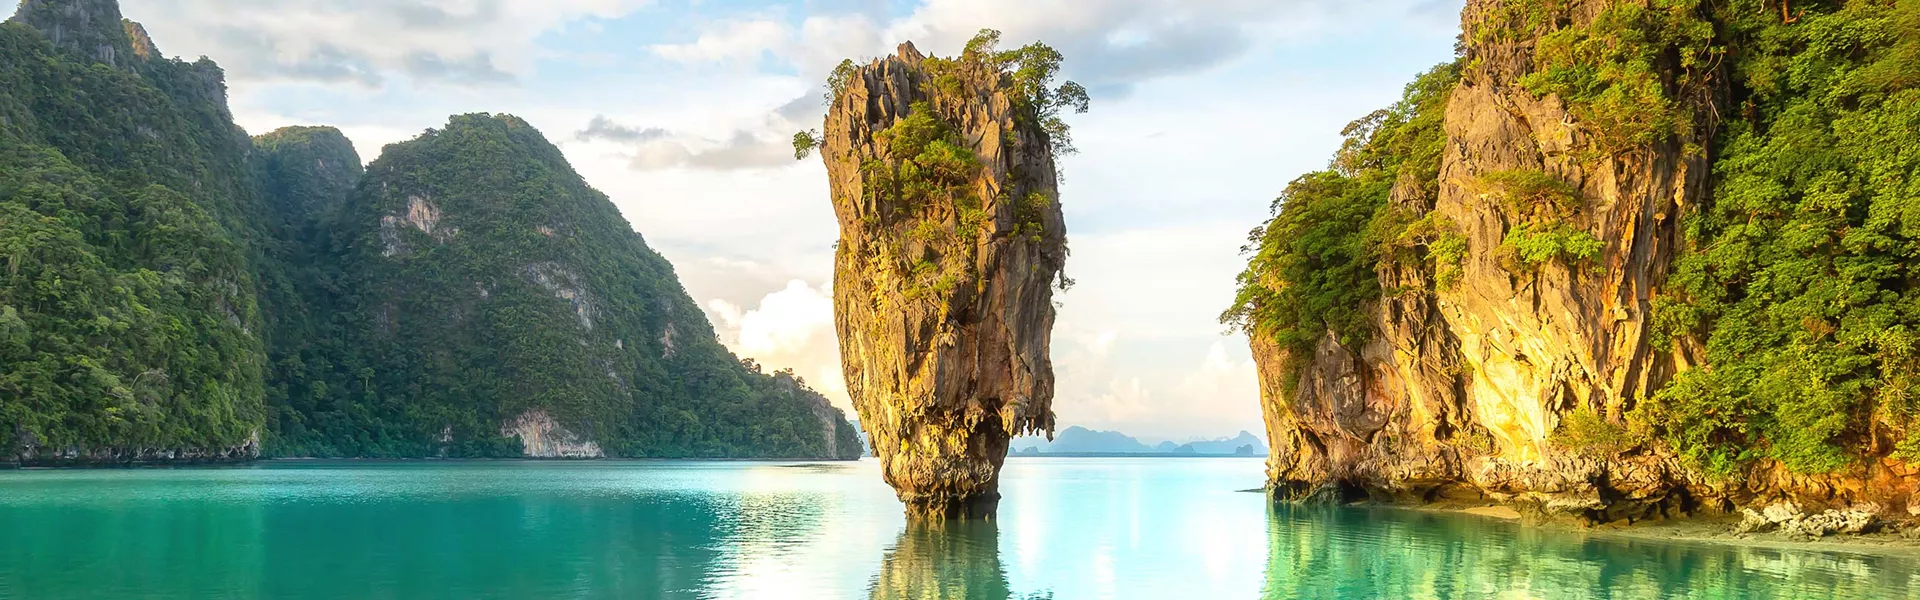 James Bond Island in Thailand 